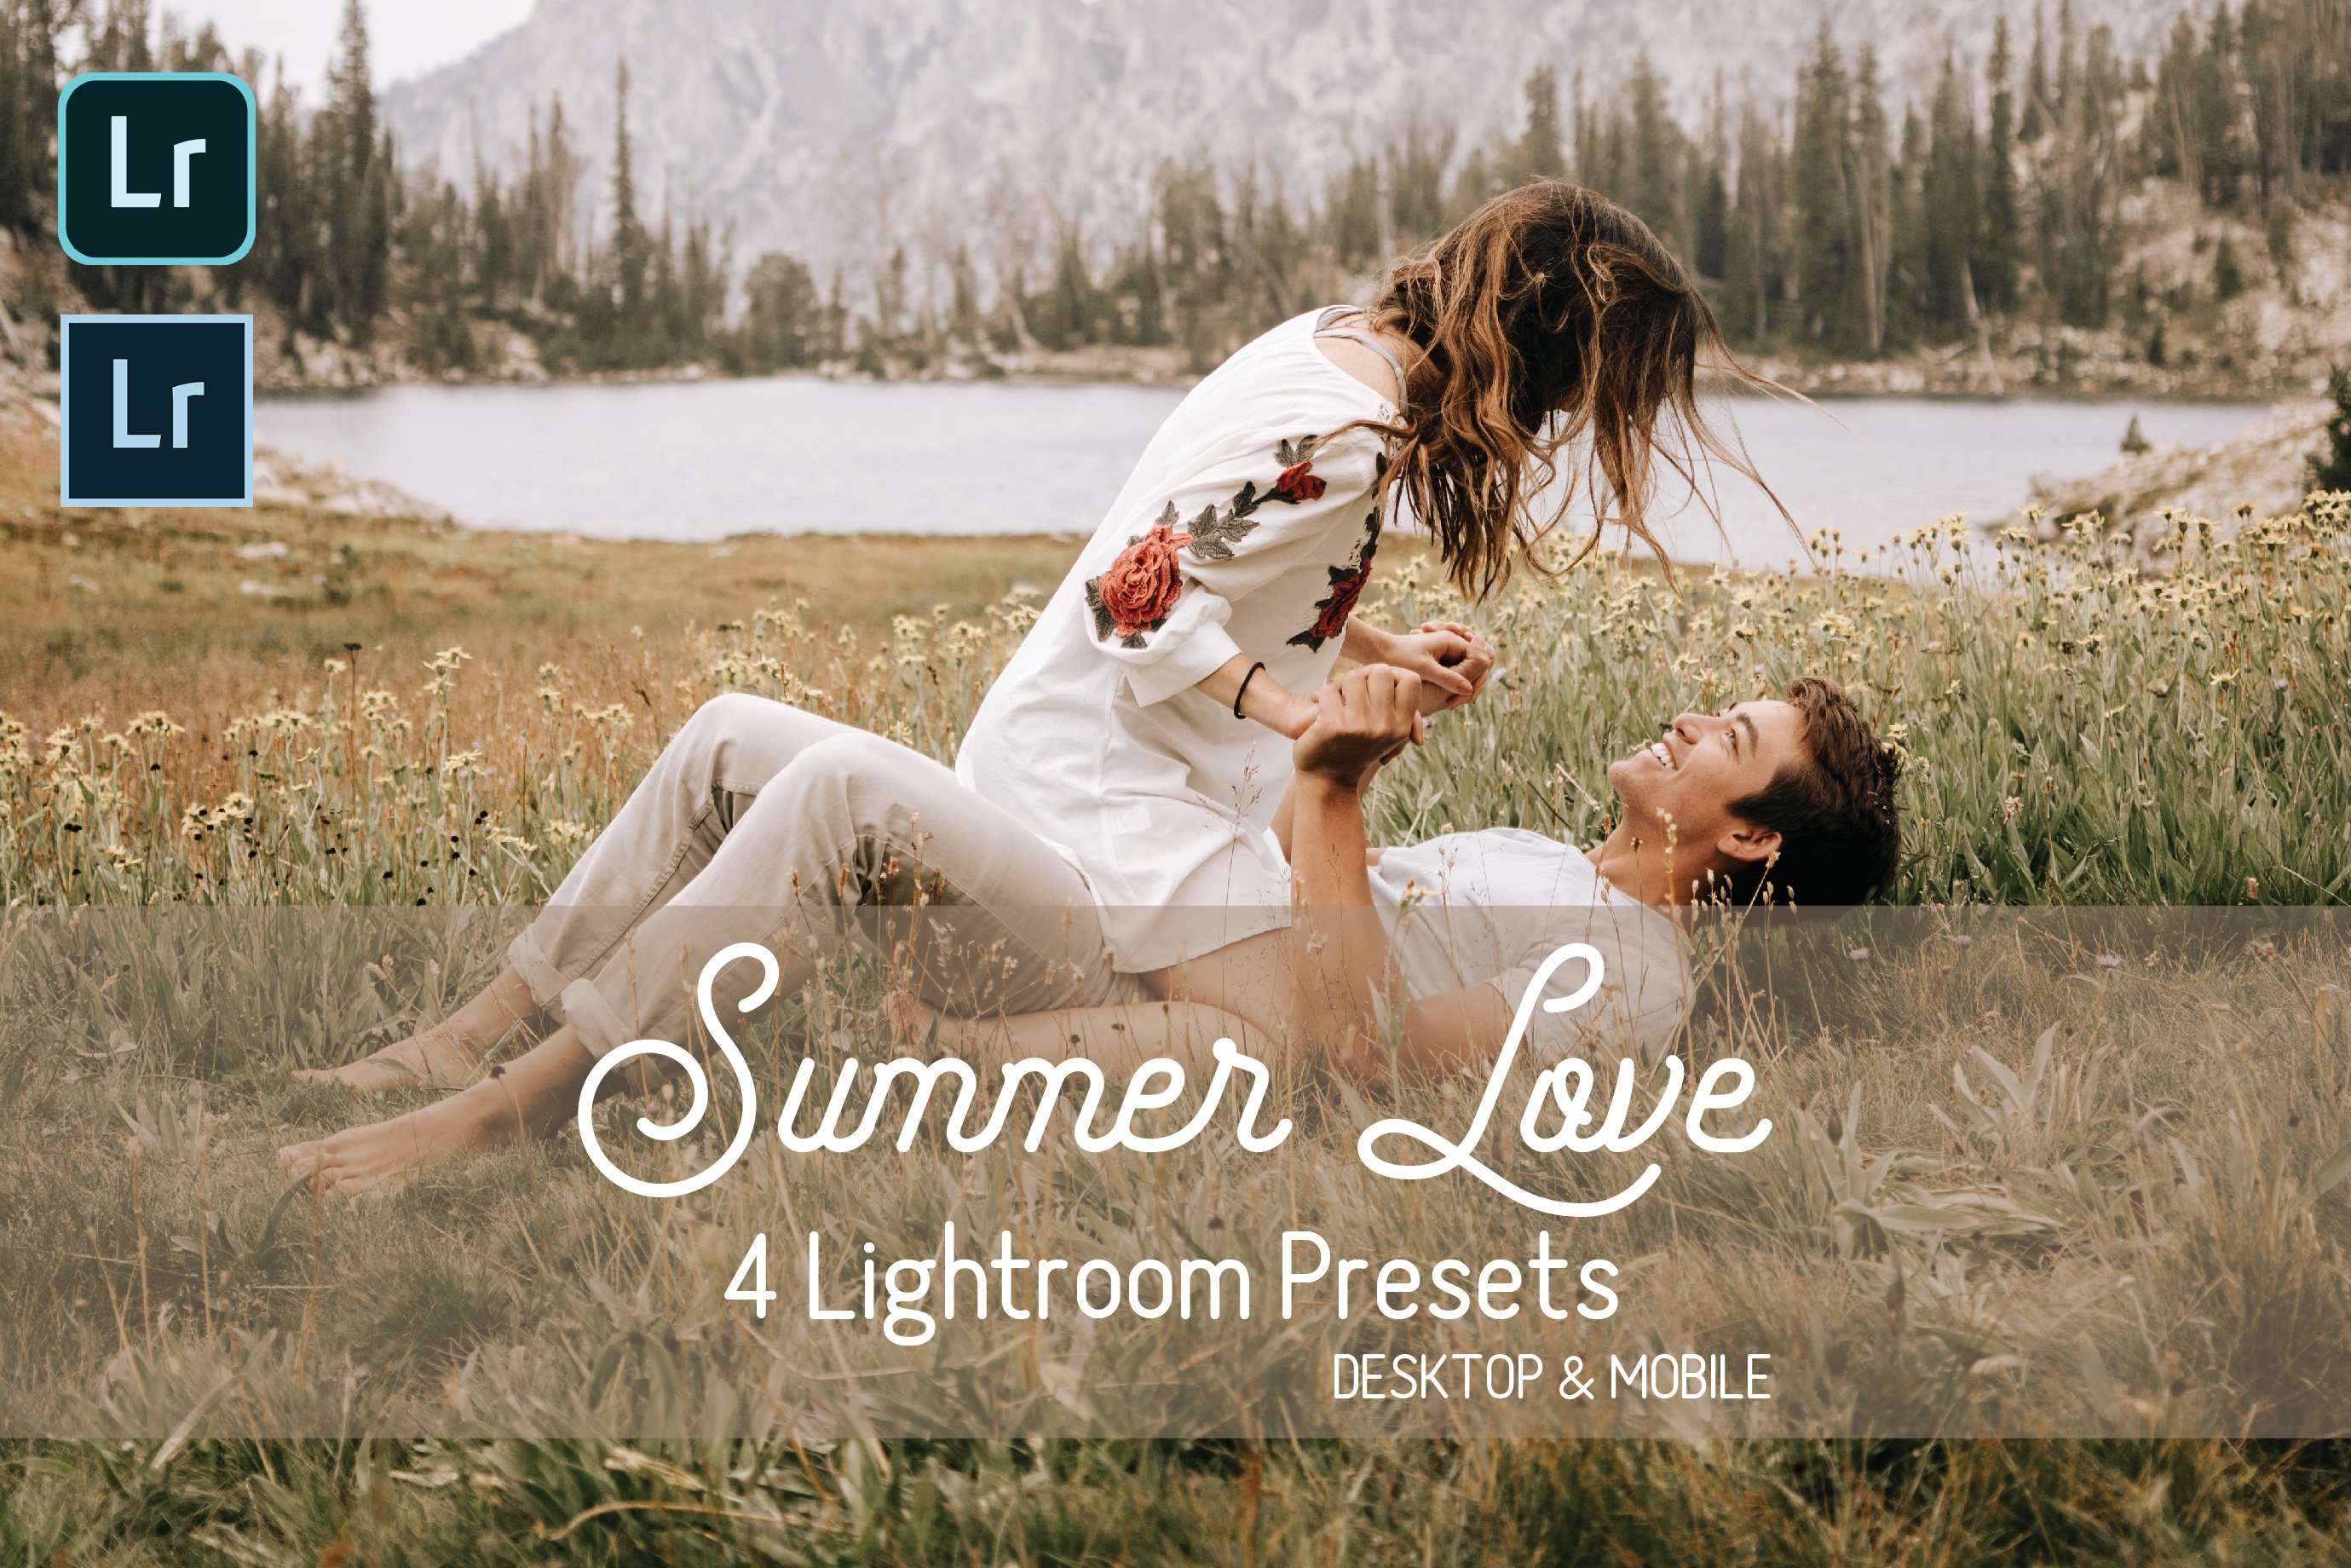 Summer Love Lightroom Presetscover image.